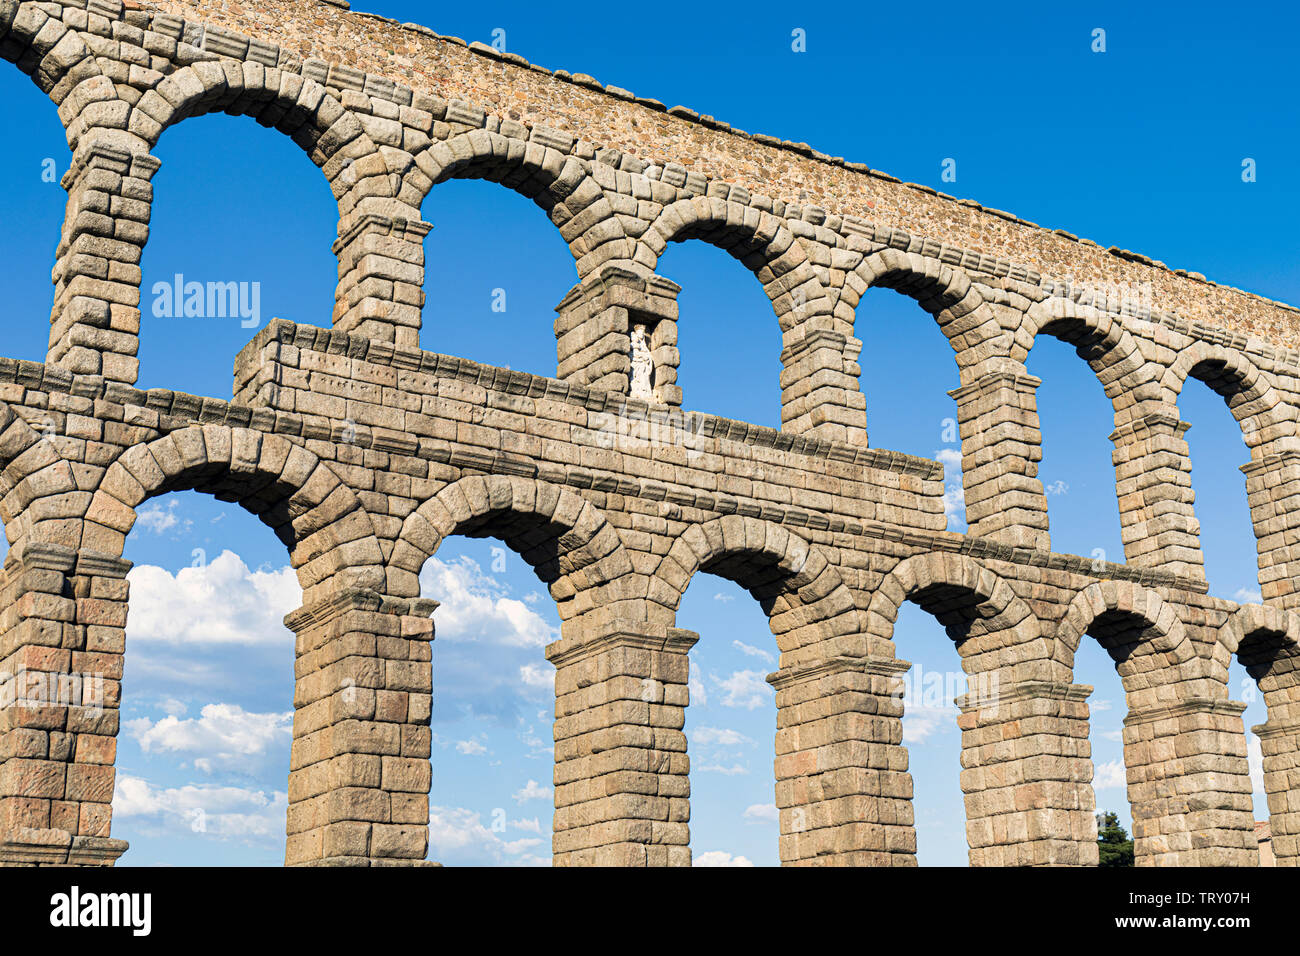 Segovia, Ségovie, Province de Castille et León, Espagne. L'aqueduc romain sur la Plaza del Azoguejo qui date de la 1ère ou 2ème ANNONCE de siècle. L'ancien remorquer Banque D'Images